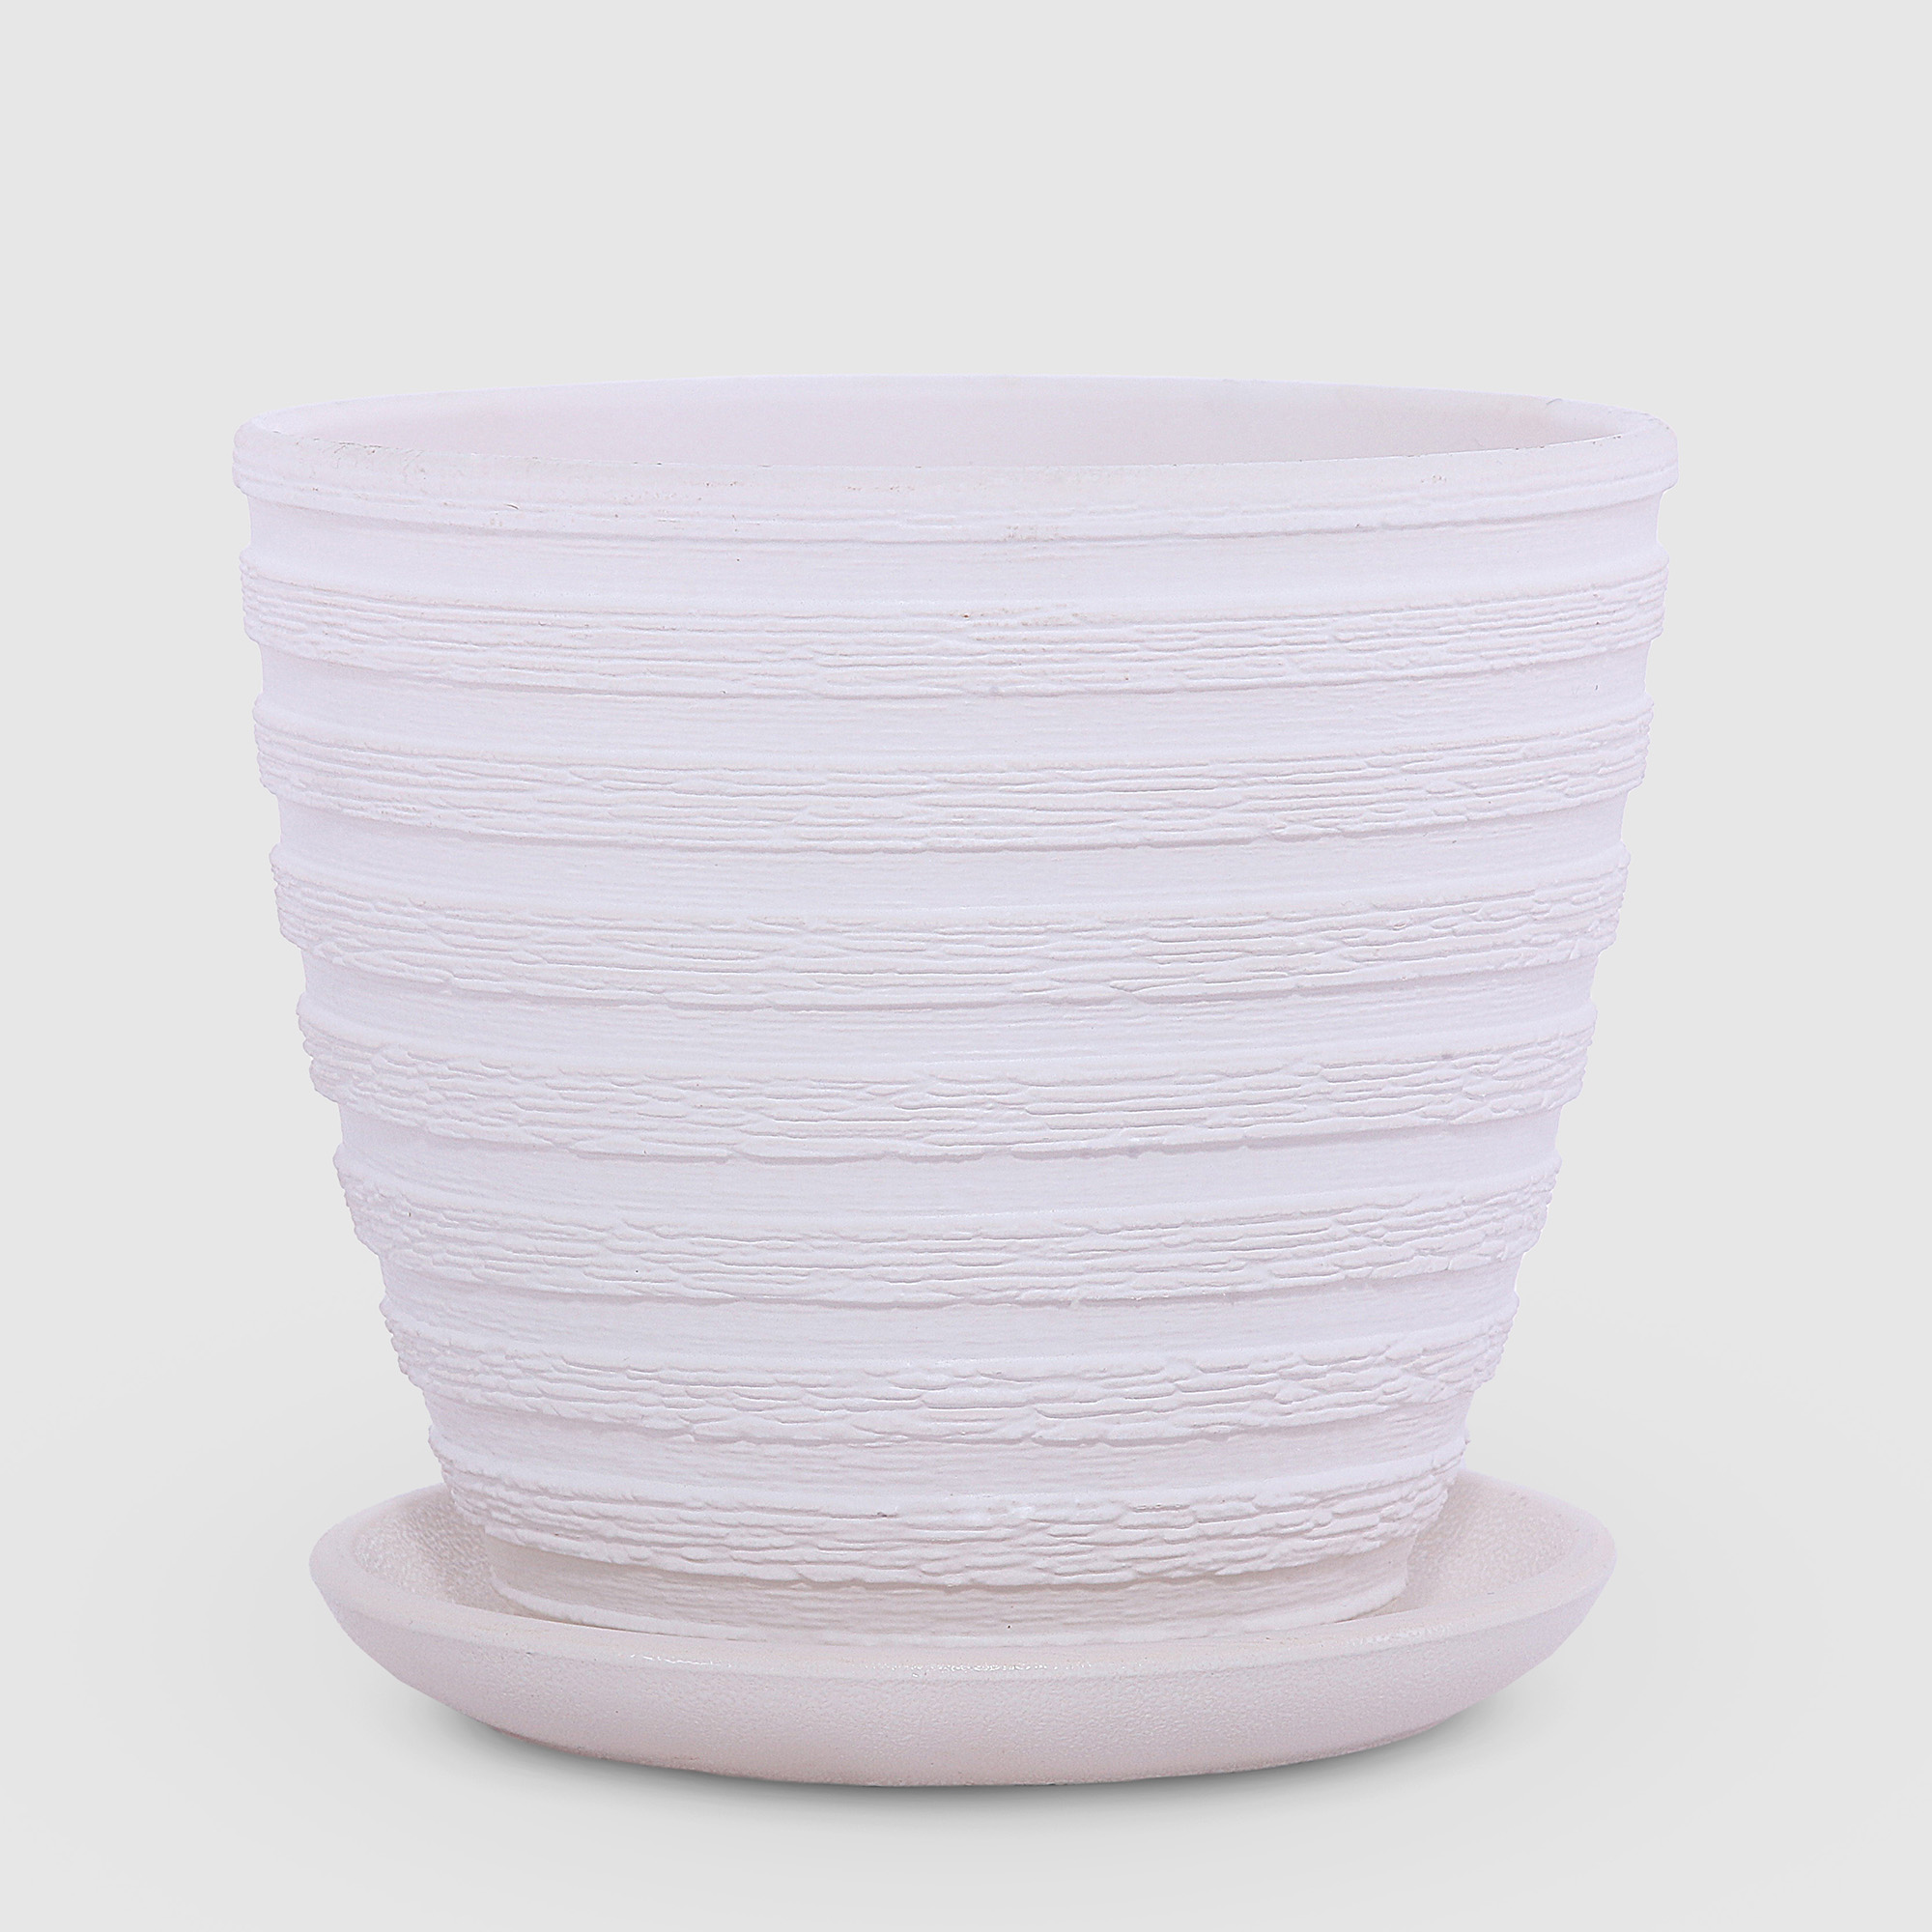 Керамический горшок с поддоном Композит Букле белый 21 см сушилка для посуды с поддоном 38×24×37 см белый